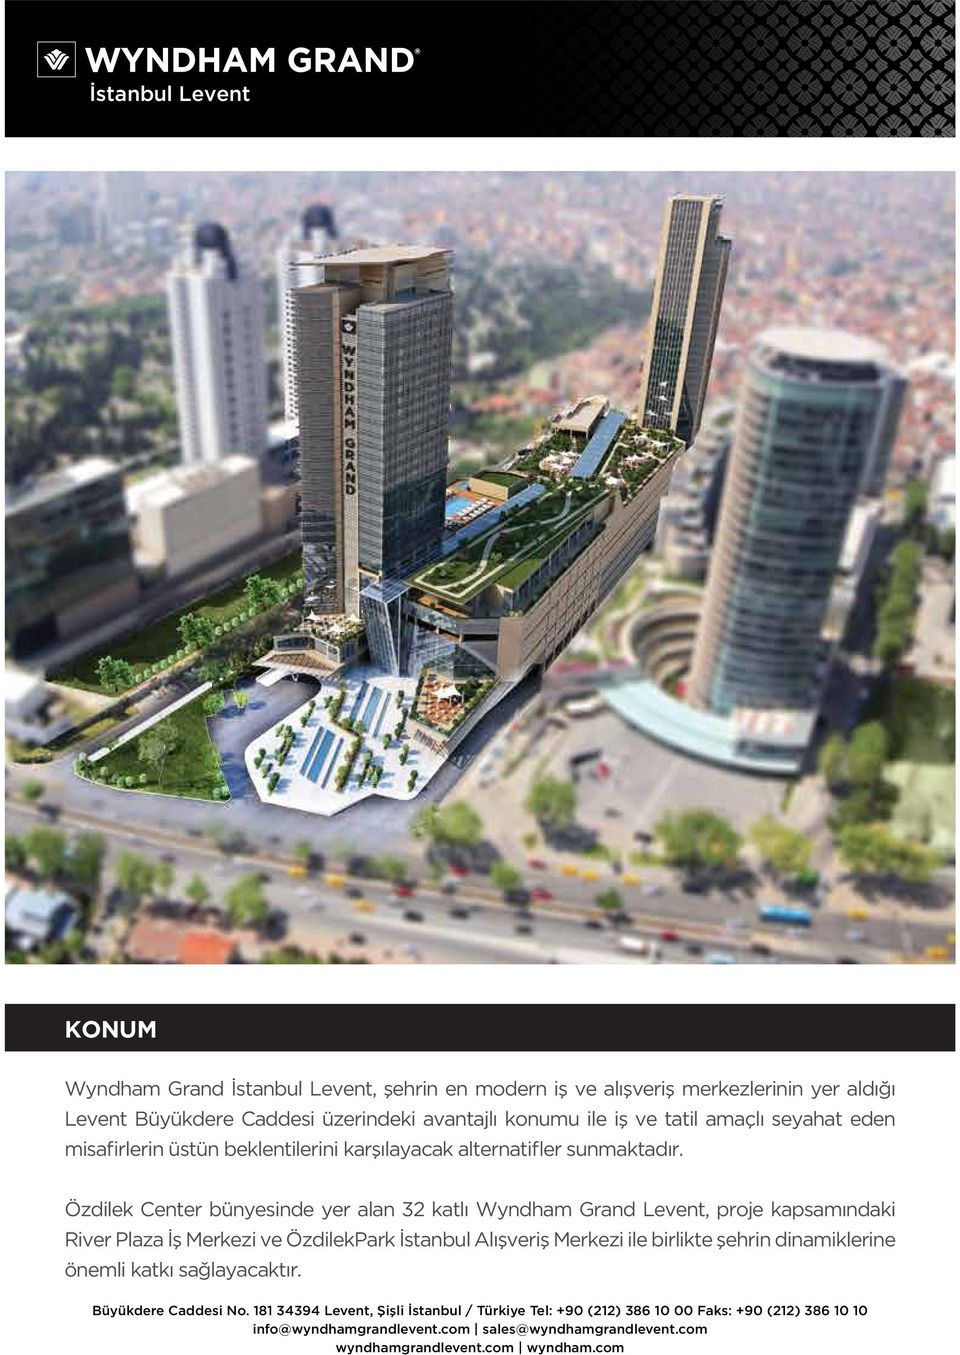 Özdilek Center bünyesinde yer alan 32 katlı Wyndham Grand Levent, proje kapsamındaki River Plaza İş Merkezi ve ÖzdilekPark İstanbul Alışveriş Merkezi ile birlikte şehrin